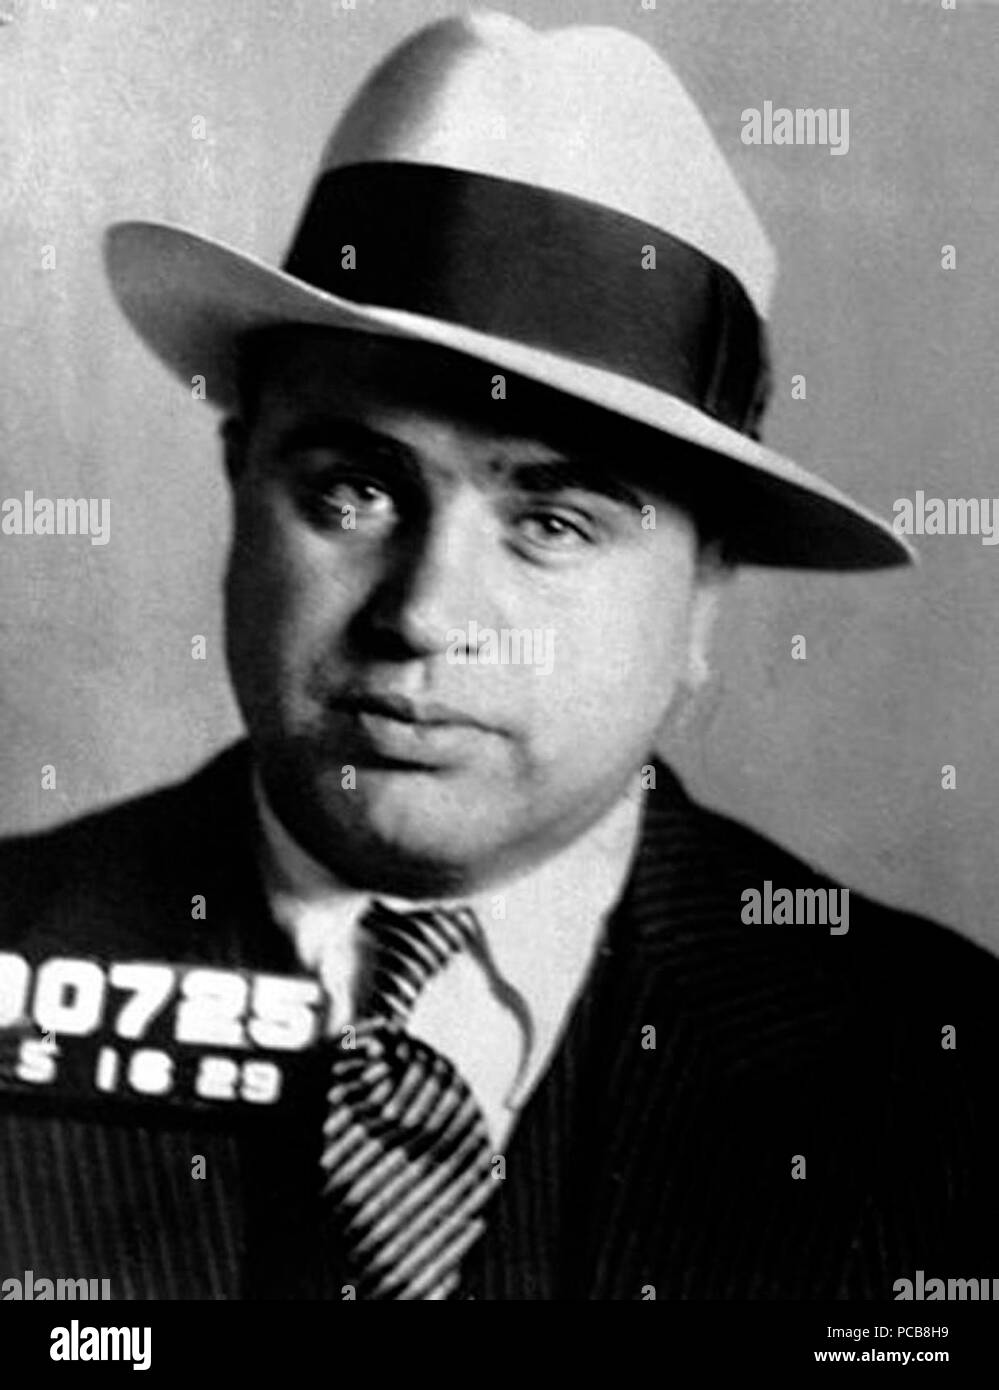 Al Capone. Stock Photo